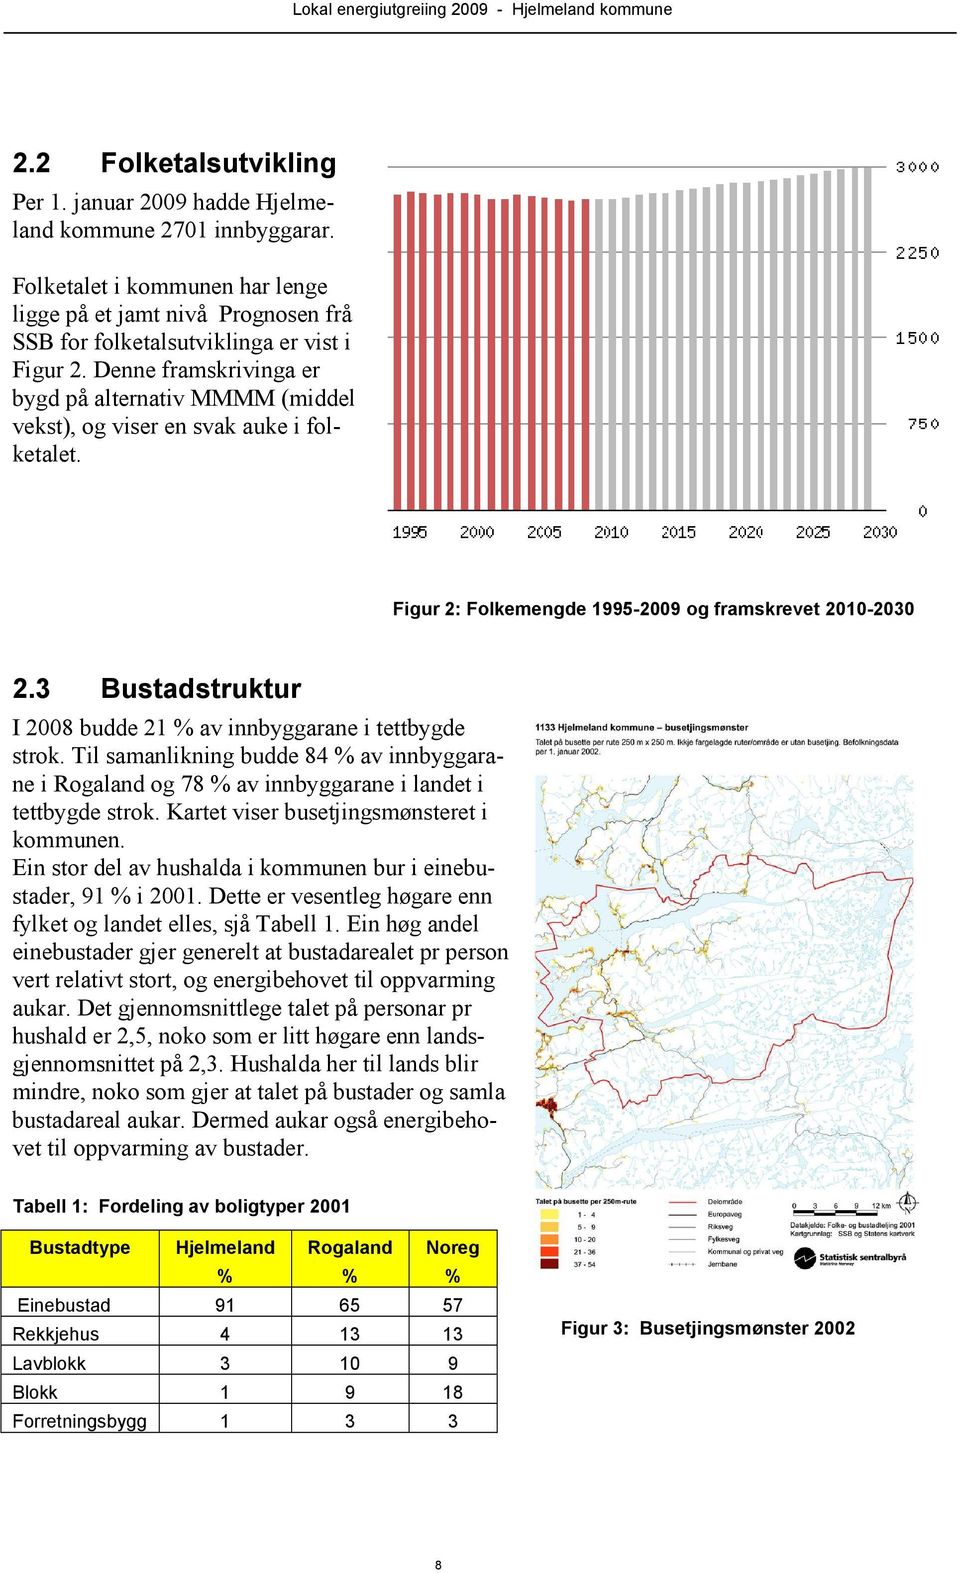 3 Bustadstruktur I 2008 budde 21 % av innbyggarane i tettbygde strok. Til samanlikning budde 84 % av innbyggarane i Rogaland og 78 % av innbyggarane i landet i tettbygde strok.